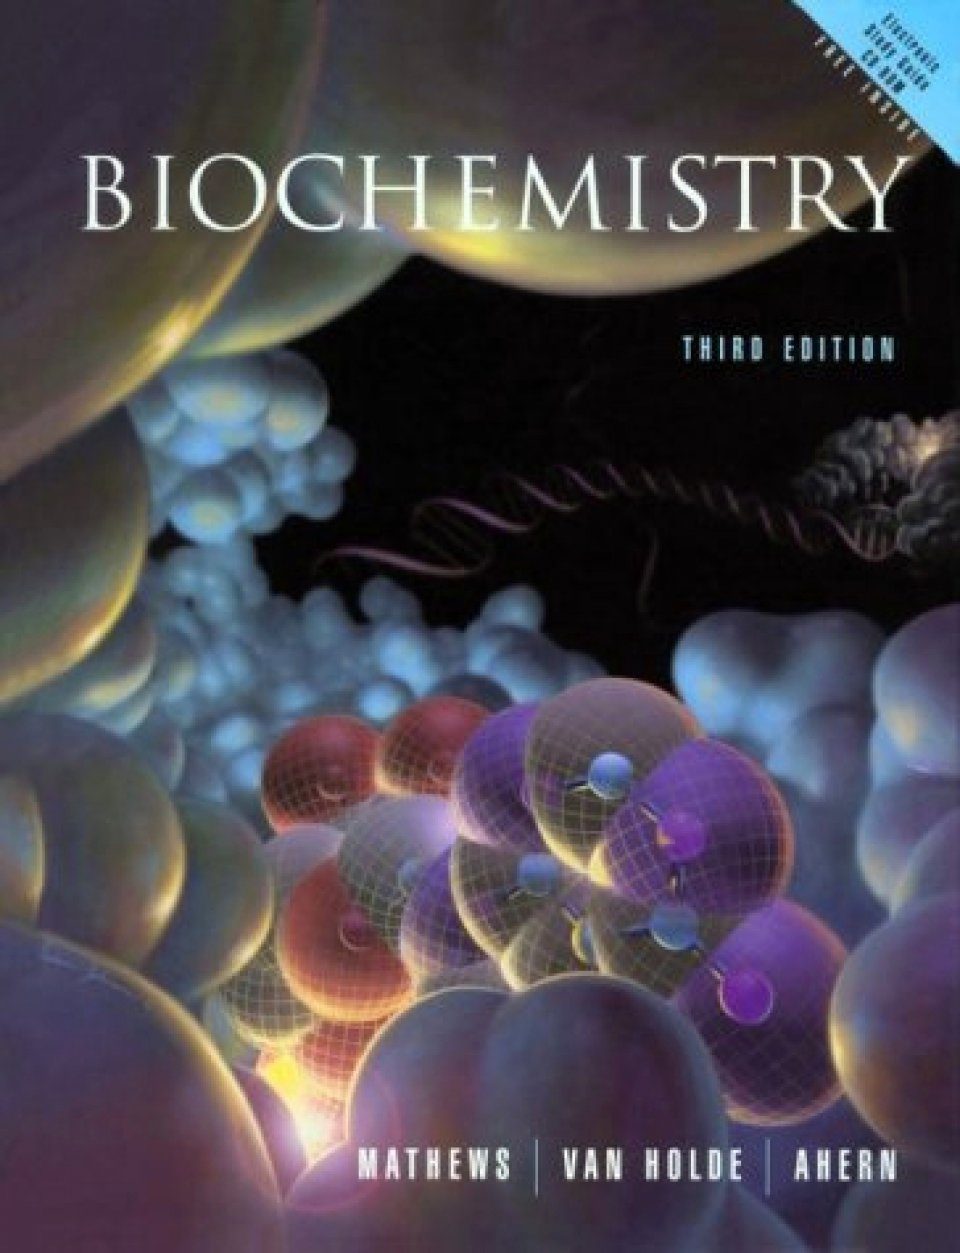 Читать биологию шапкина. Biochemistry book. Фон на обложку книги биохимия. 3d for Biochemistry Electron book. Molecular Biology third Edition.